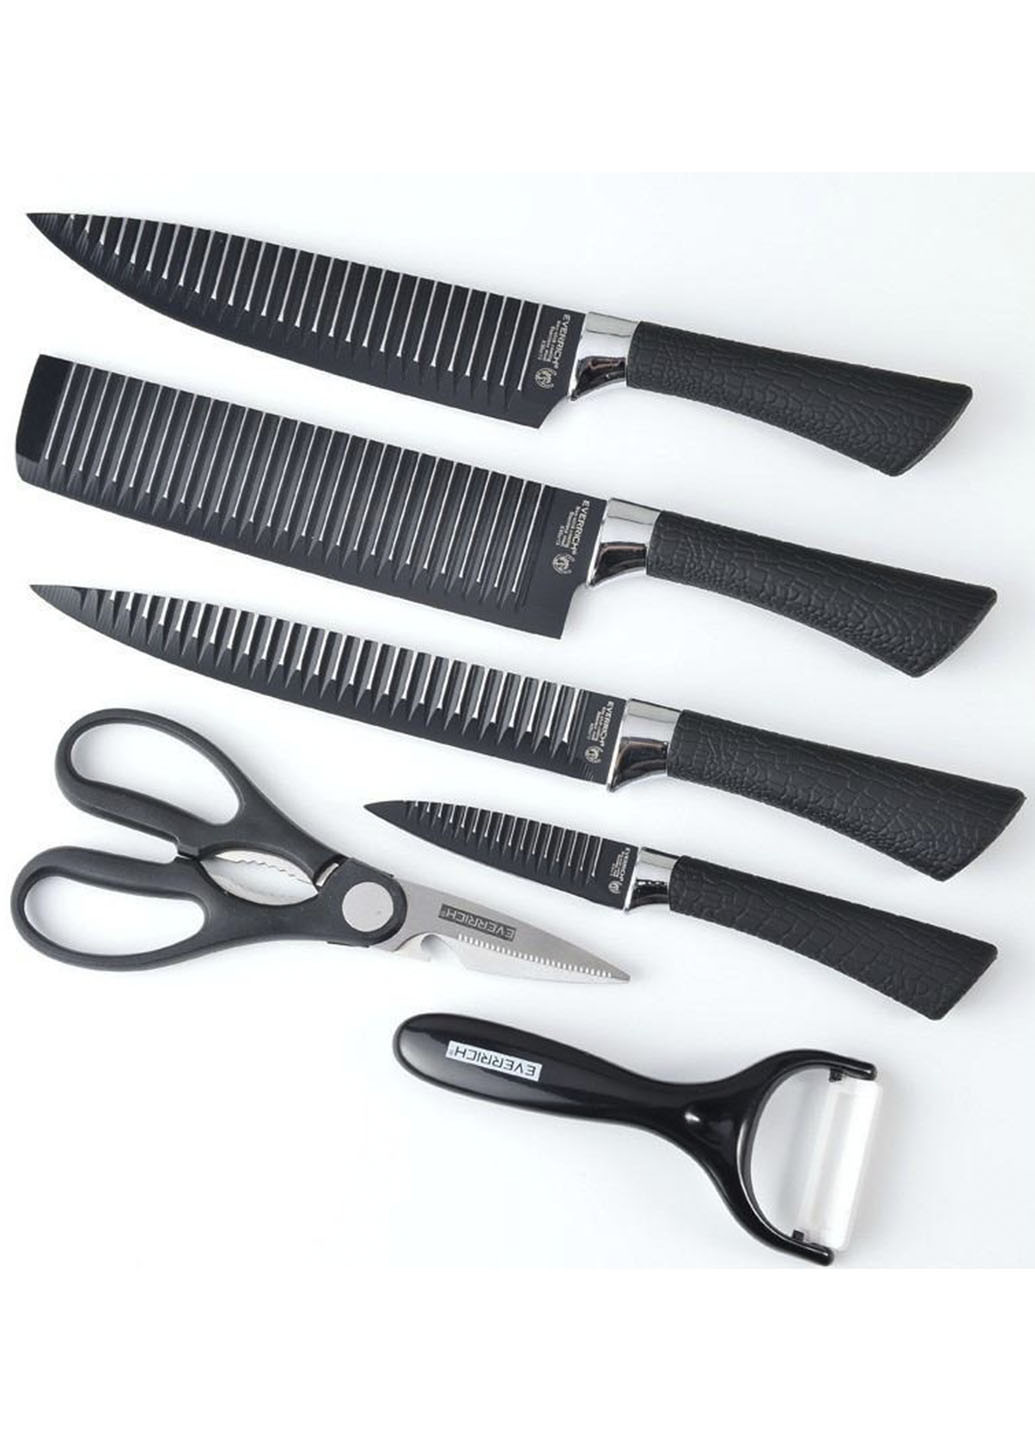 Набор ножей и ножницы Everrich H-004 из нержавеющей стали Good Idea чёрные, металл